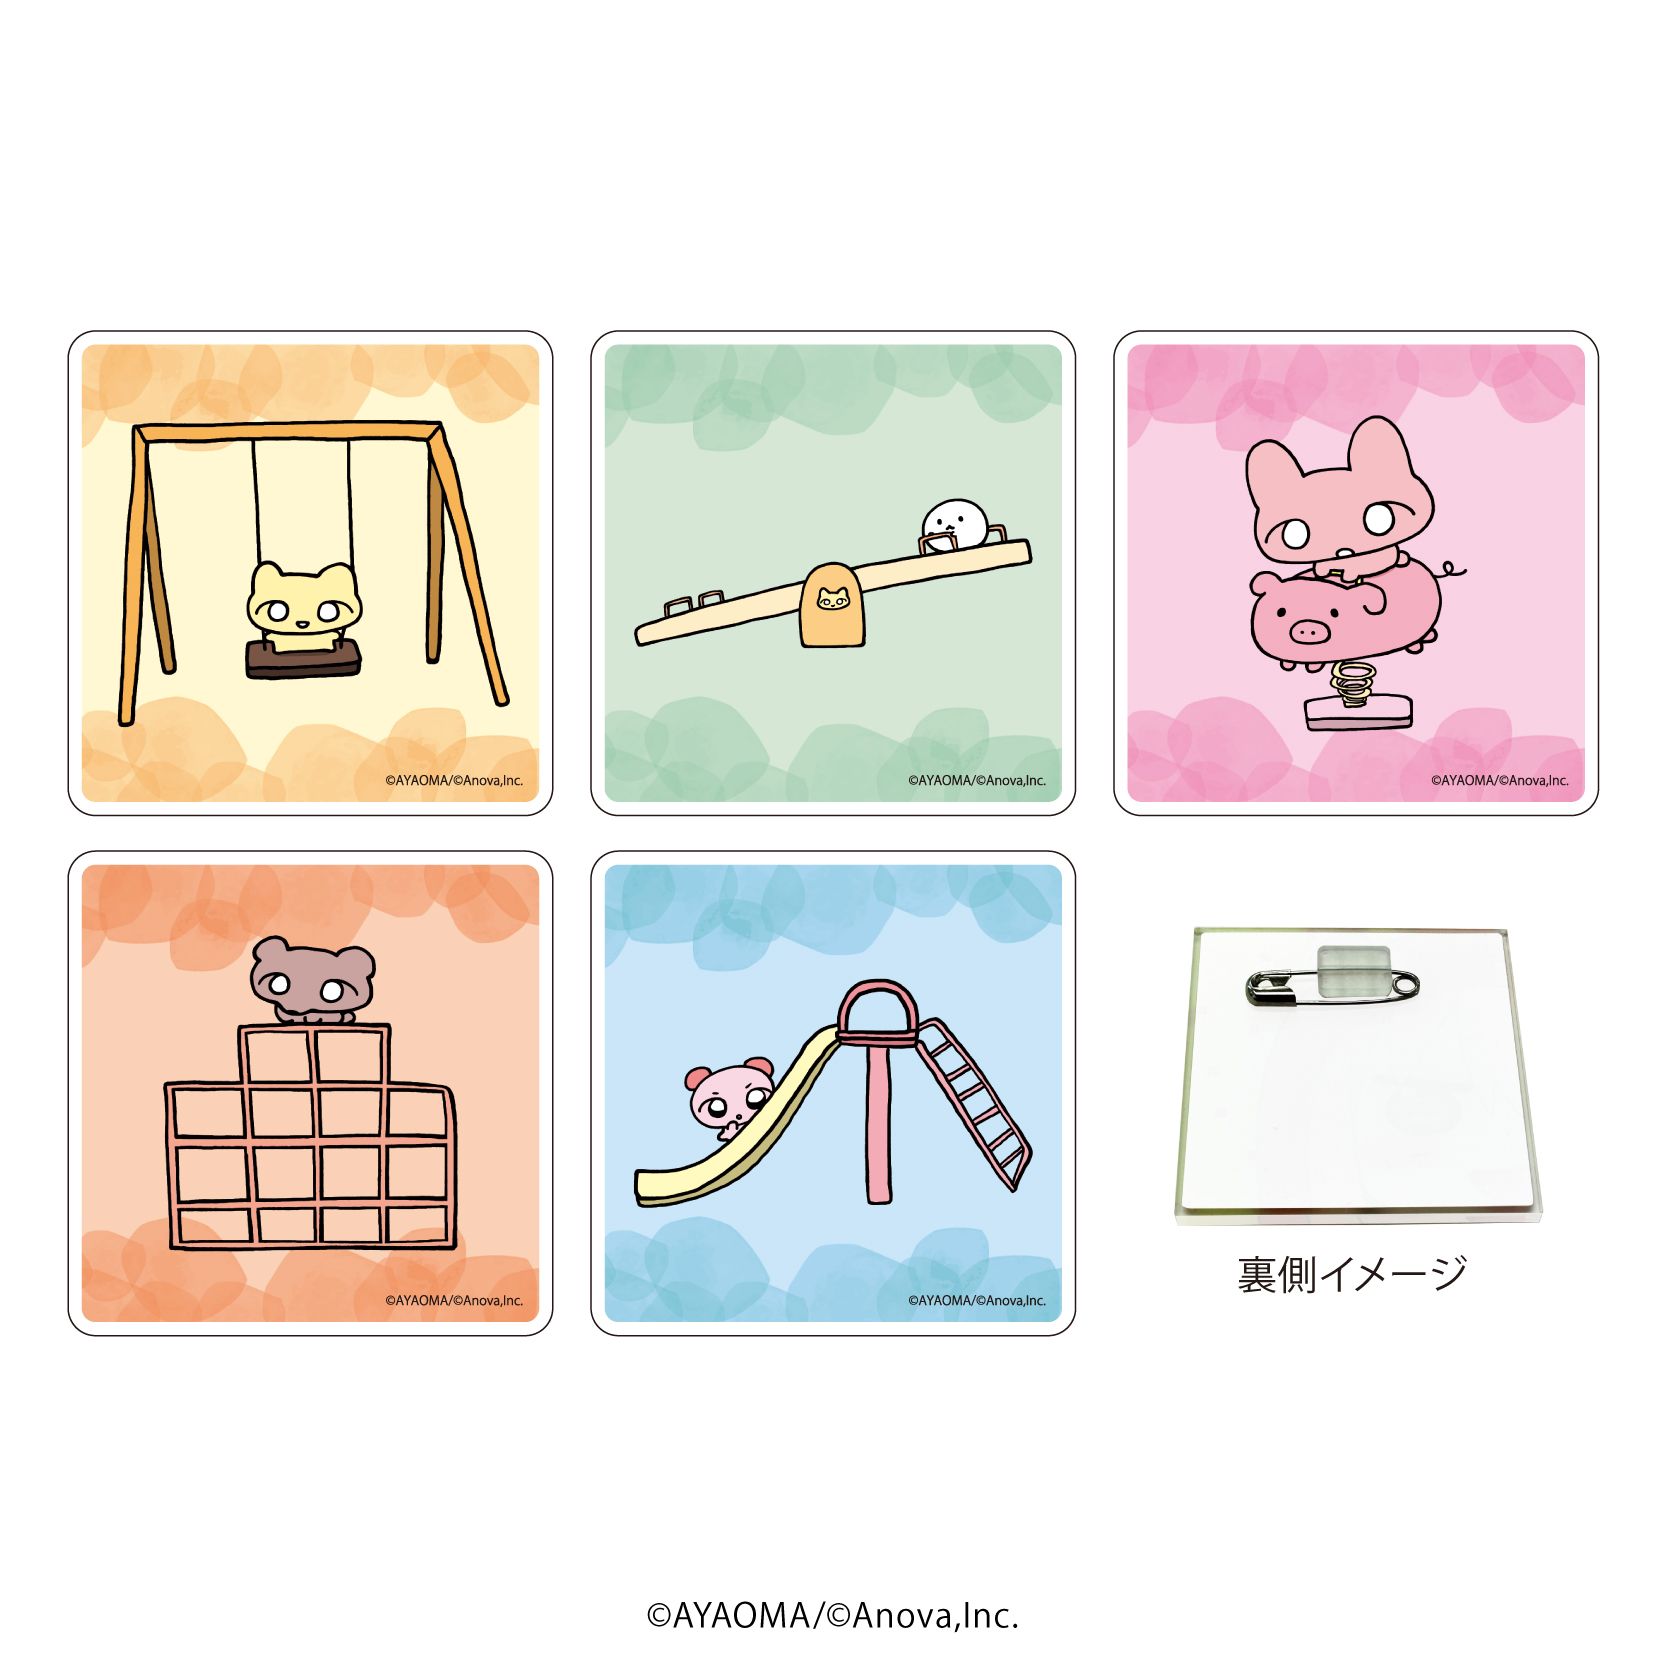 キャラアクリルバッジ「ねこちゃん」01/コンプリートBOX(全5種)(描き下ろしイラスト)